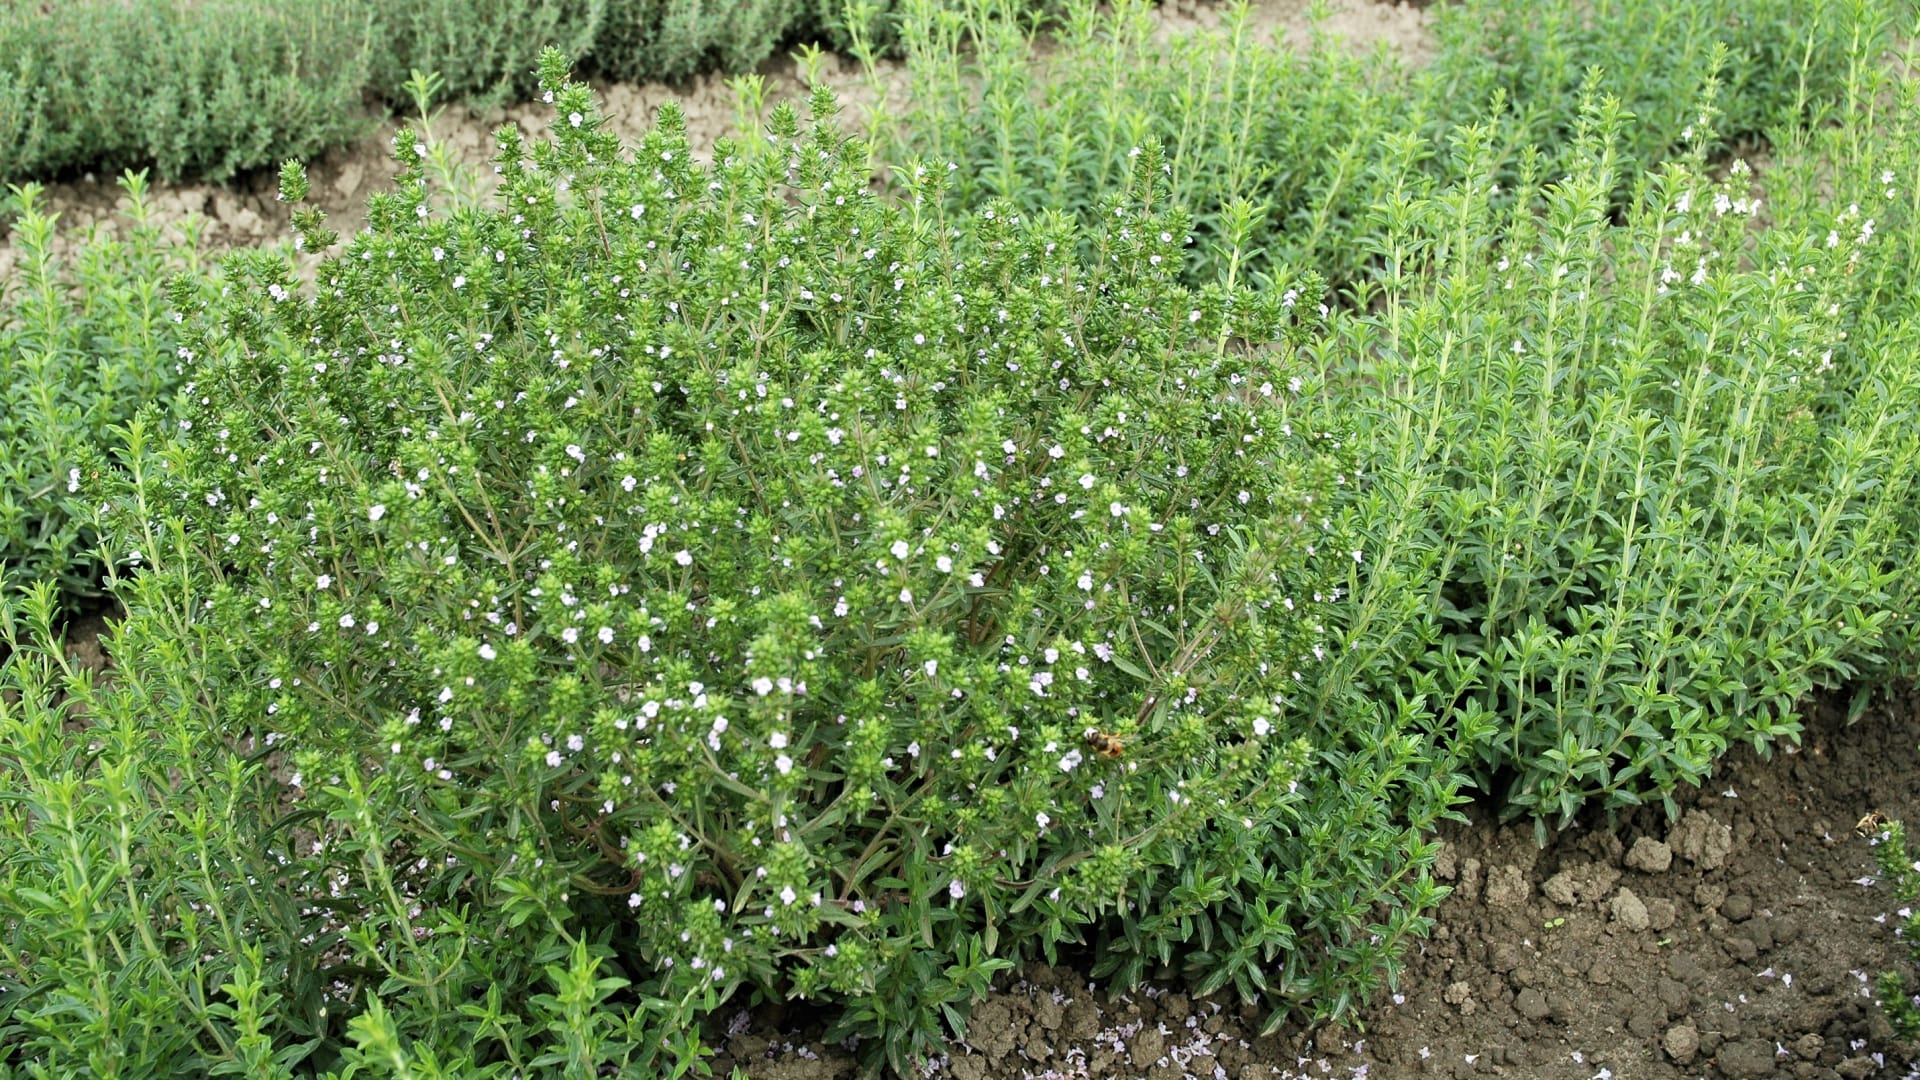 Saturejka zahradní (Satureja hortensis) se dá úspěšně vegetativně množit především řízkováním.